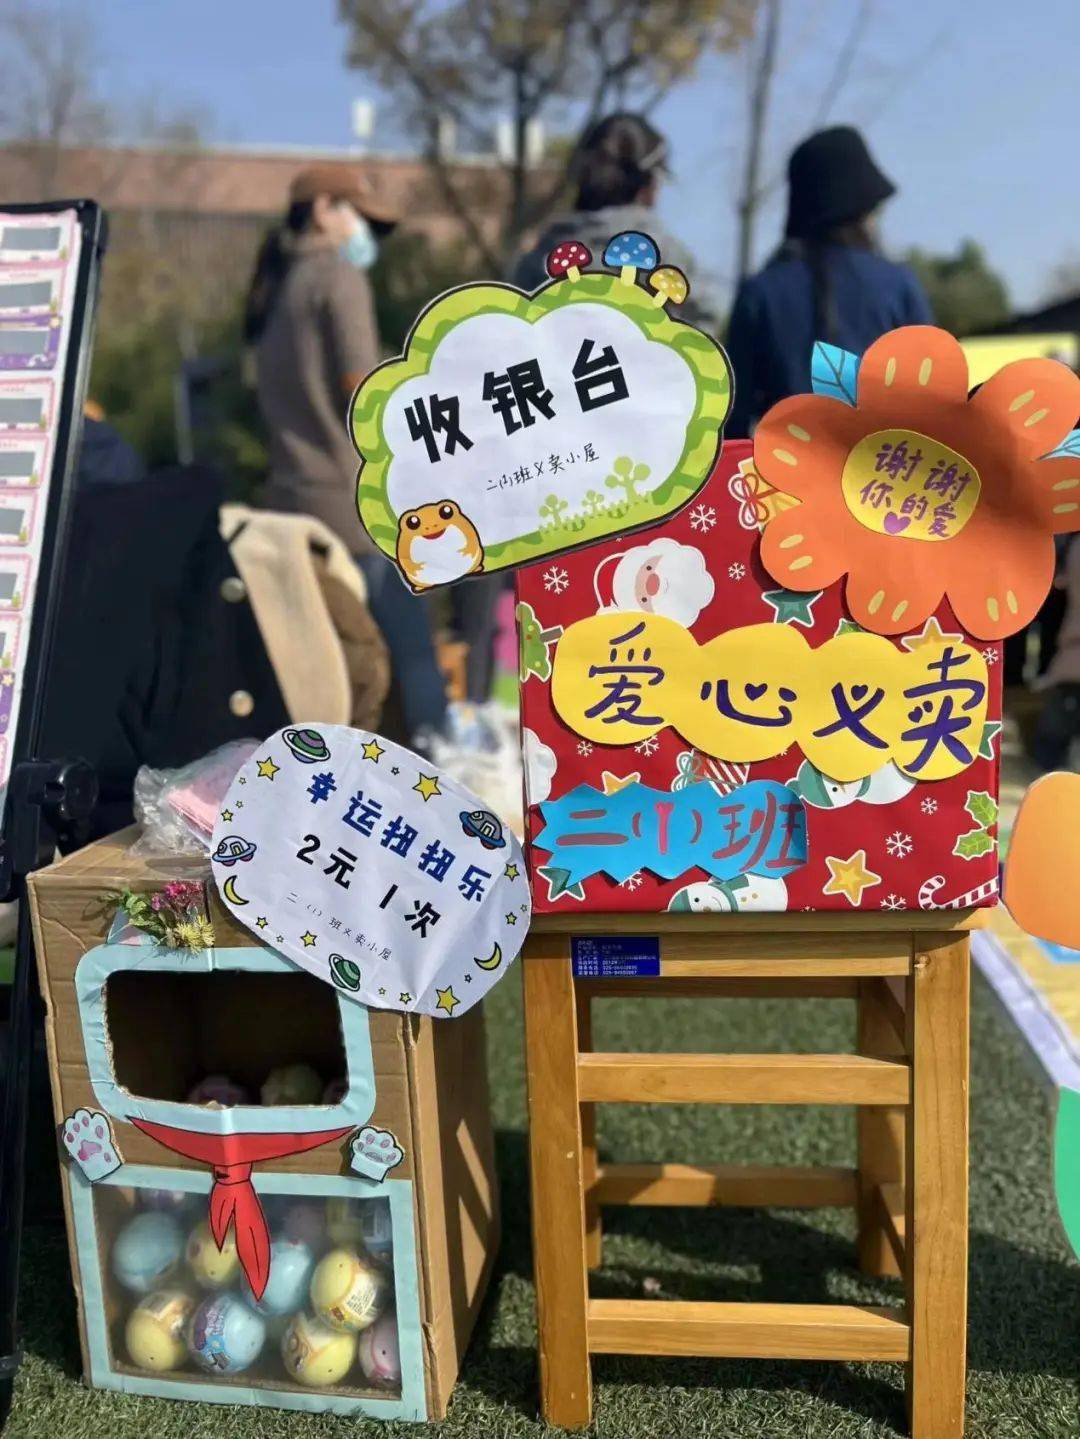 【世界儿童】点亮微心愿 童心向未来——南京市金陵小学爱心义卖活动